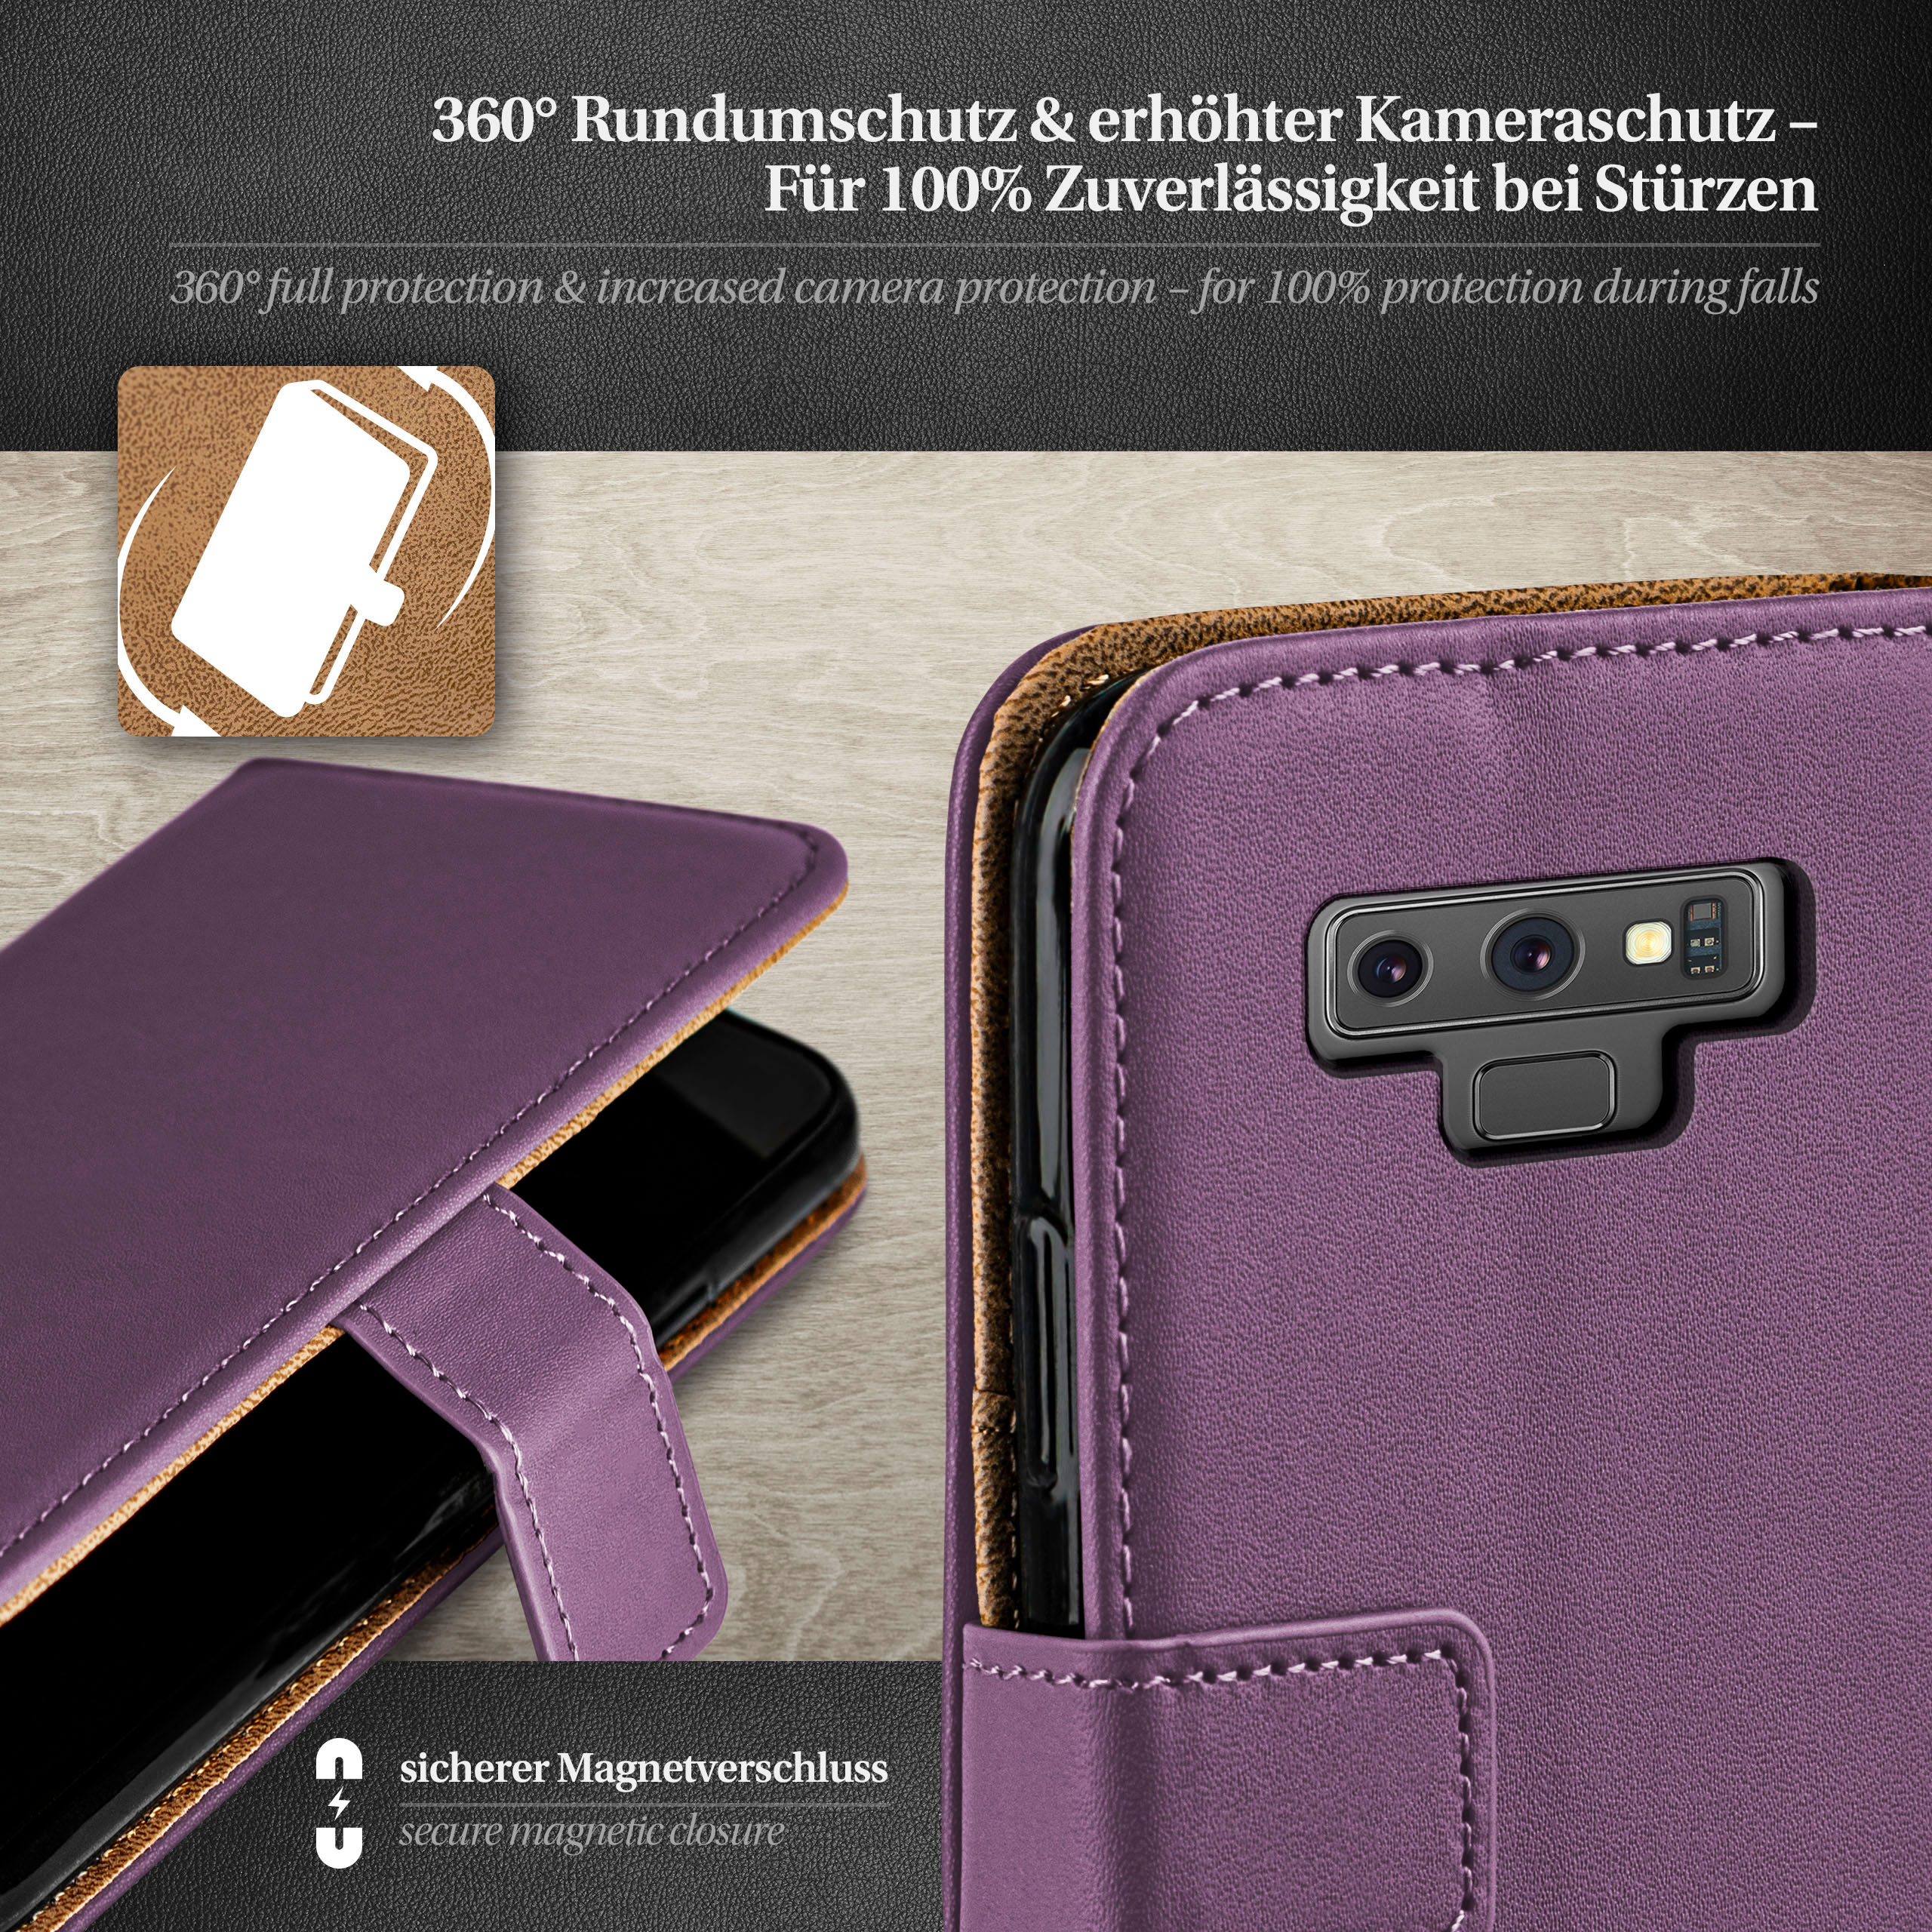 MOEX Book Case, Bookcover, 9, Galaxy Note Indigo-Violet Samsung